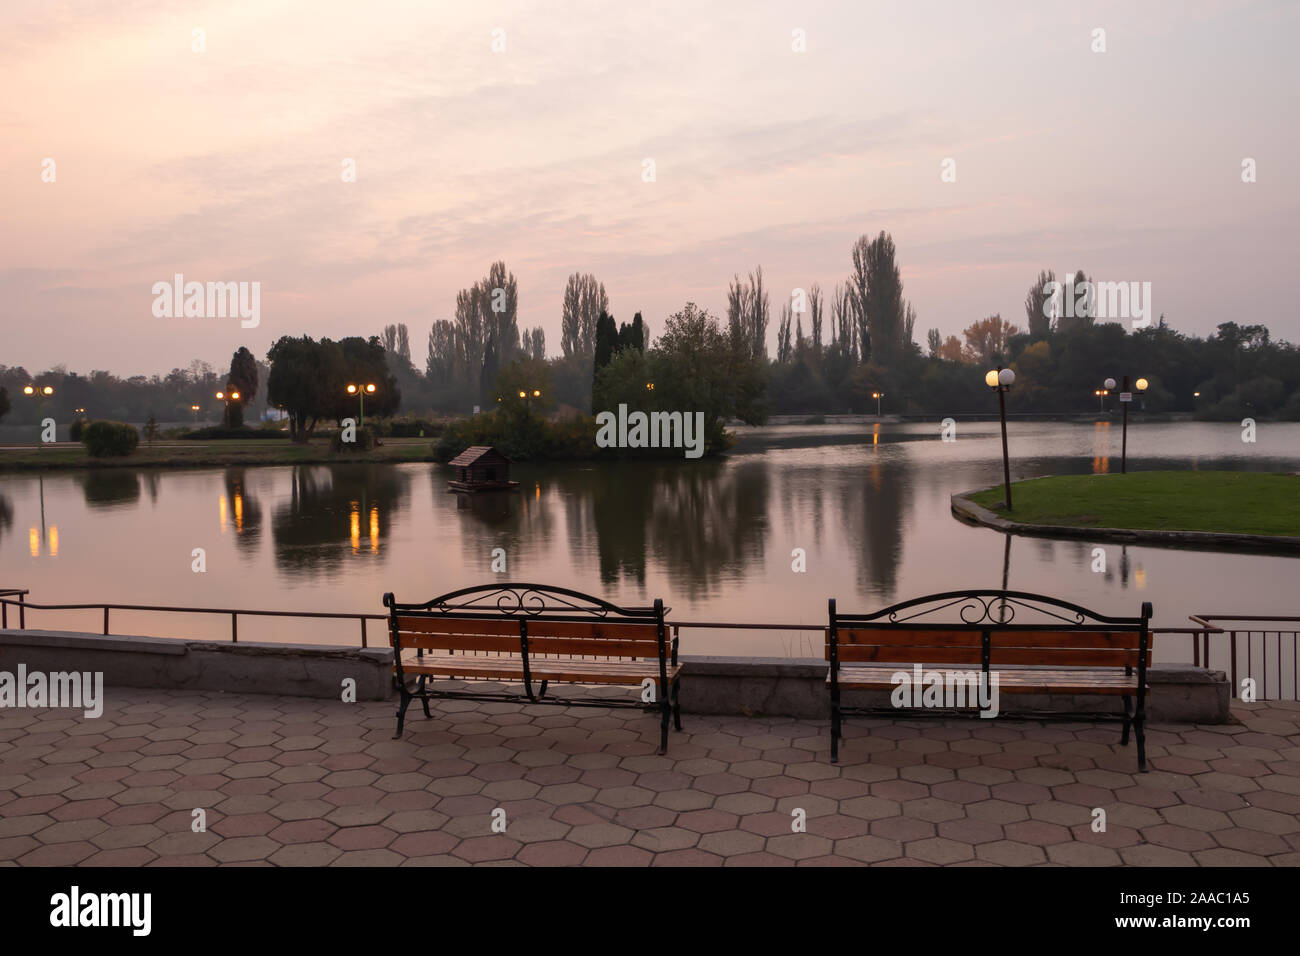 Stara Zagora, Bulgarien - Oktober 30, 2019: Blick über den See Zagorka am frühen Morgen. Stockfoto